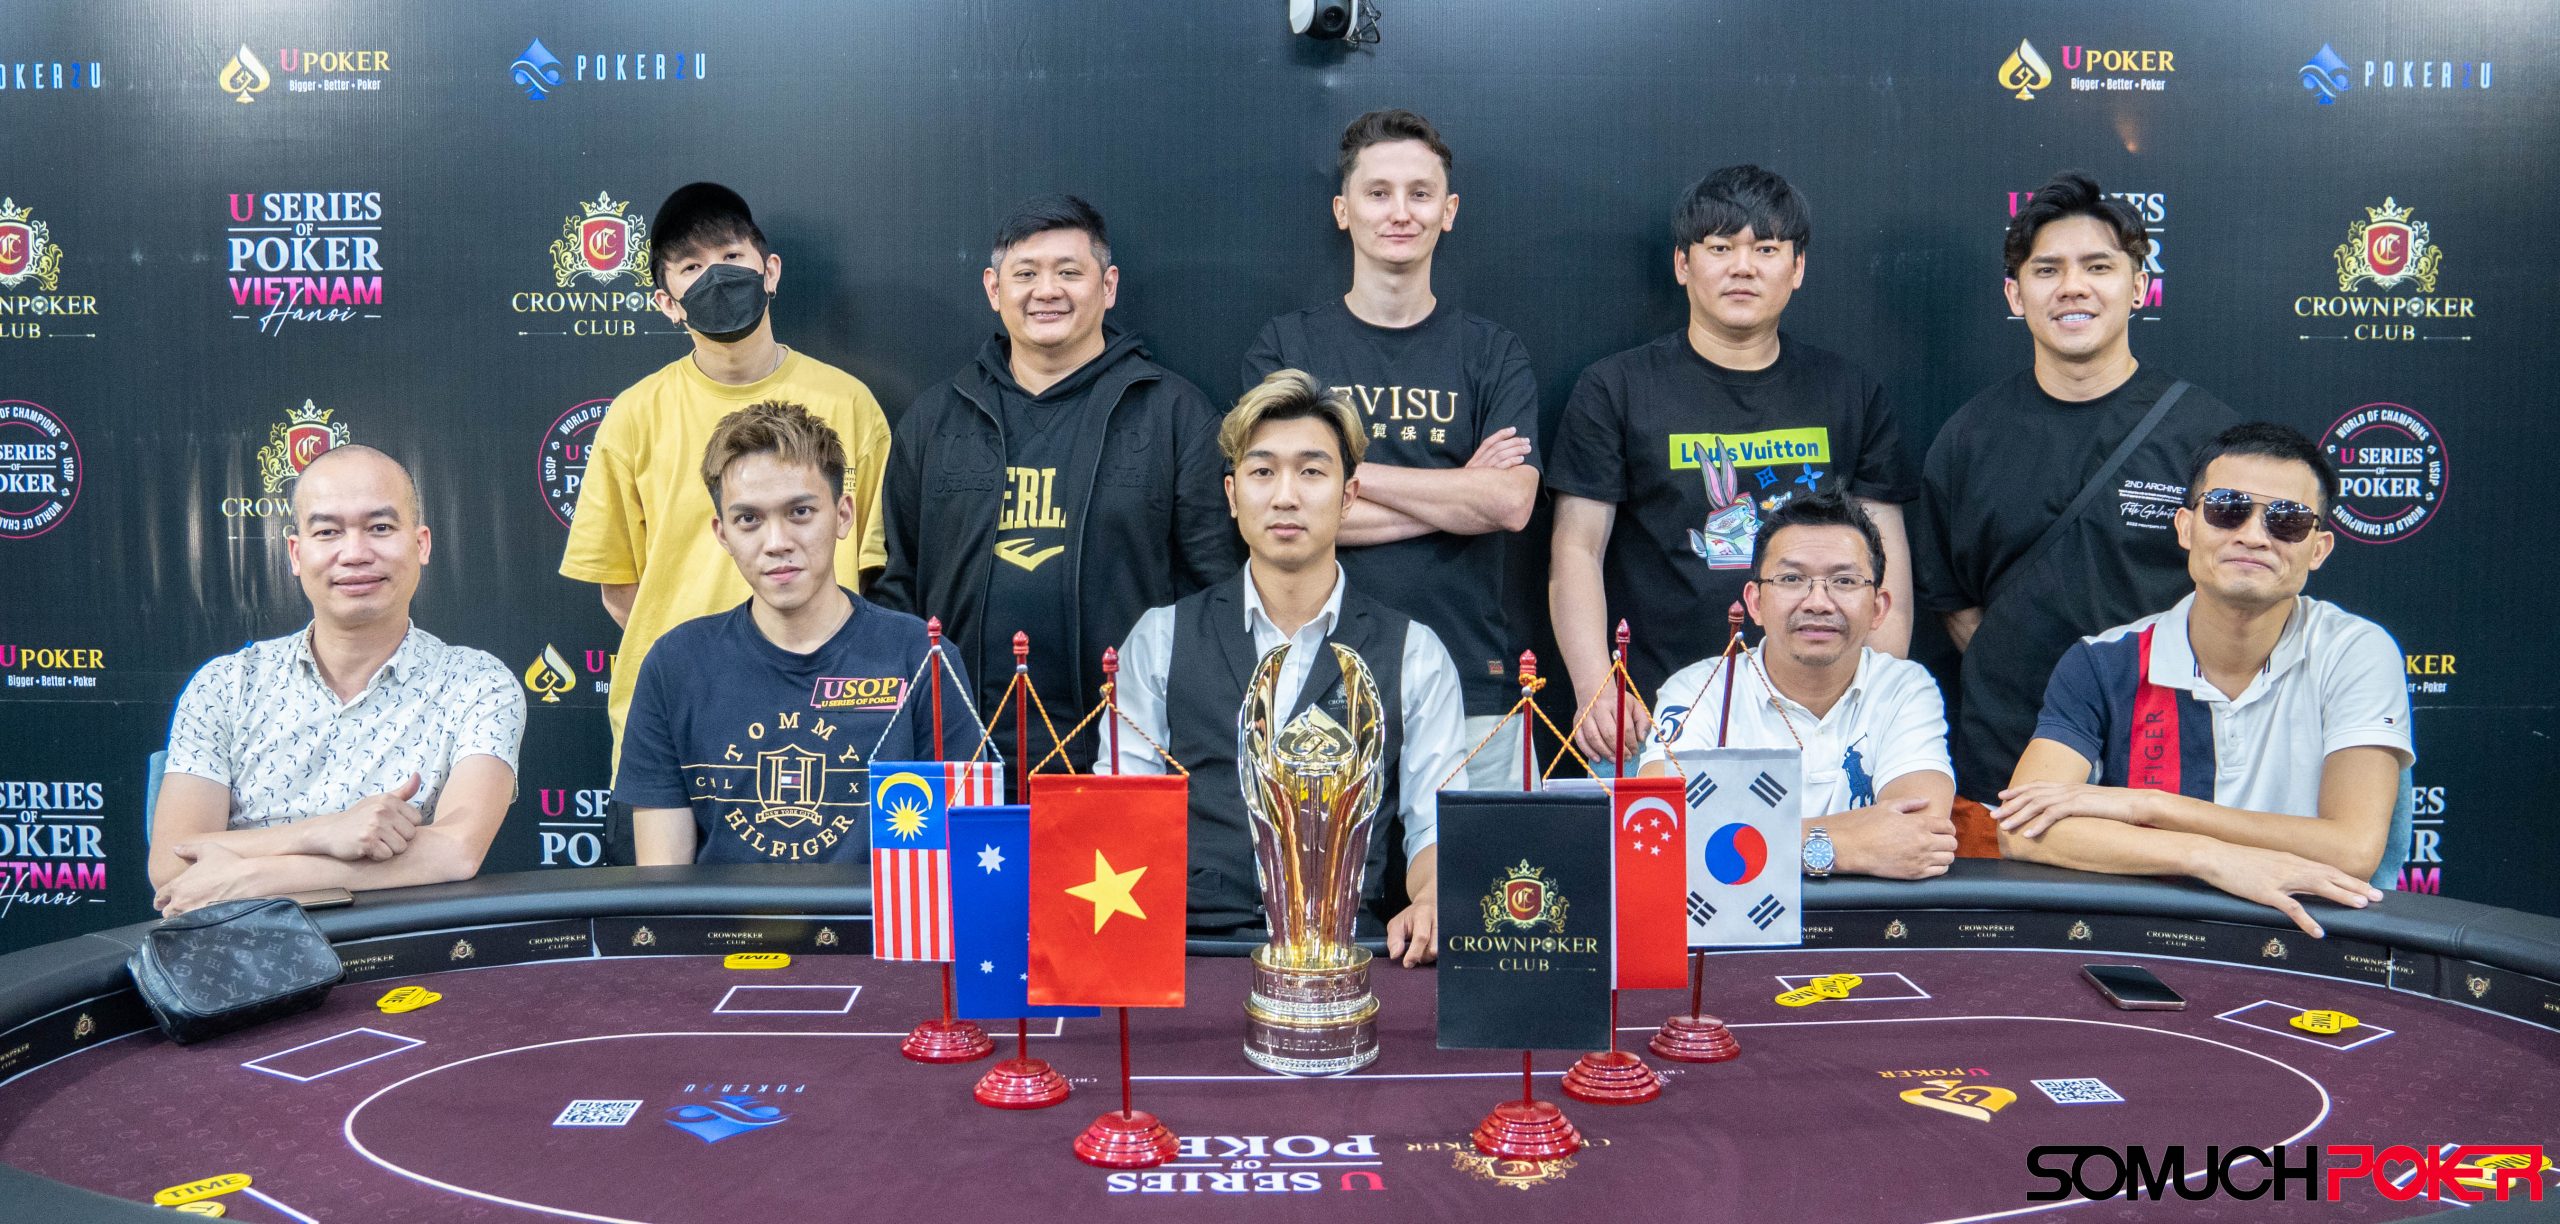 USOP Vietnam: MAIN EVENT Final 9 players - the race begins at 11am